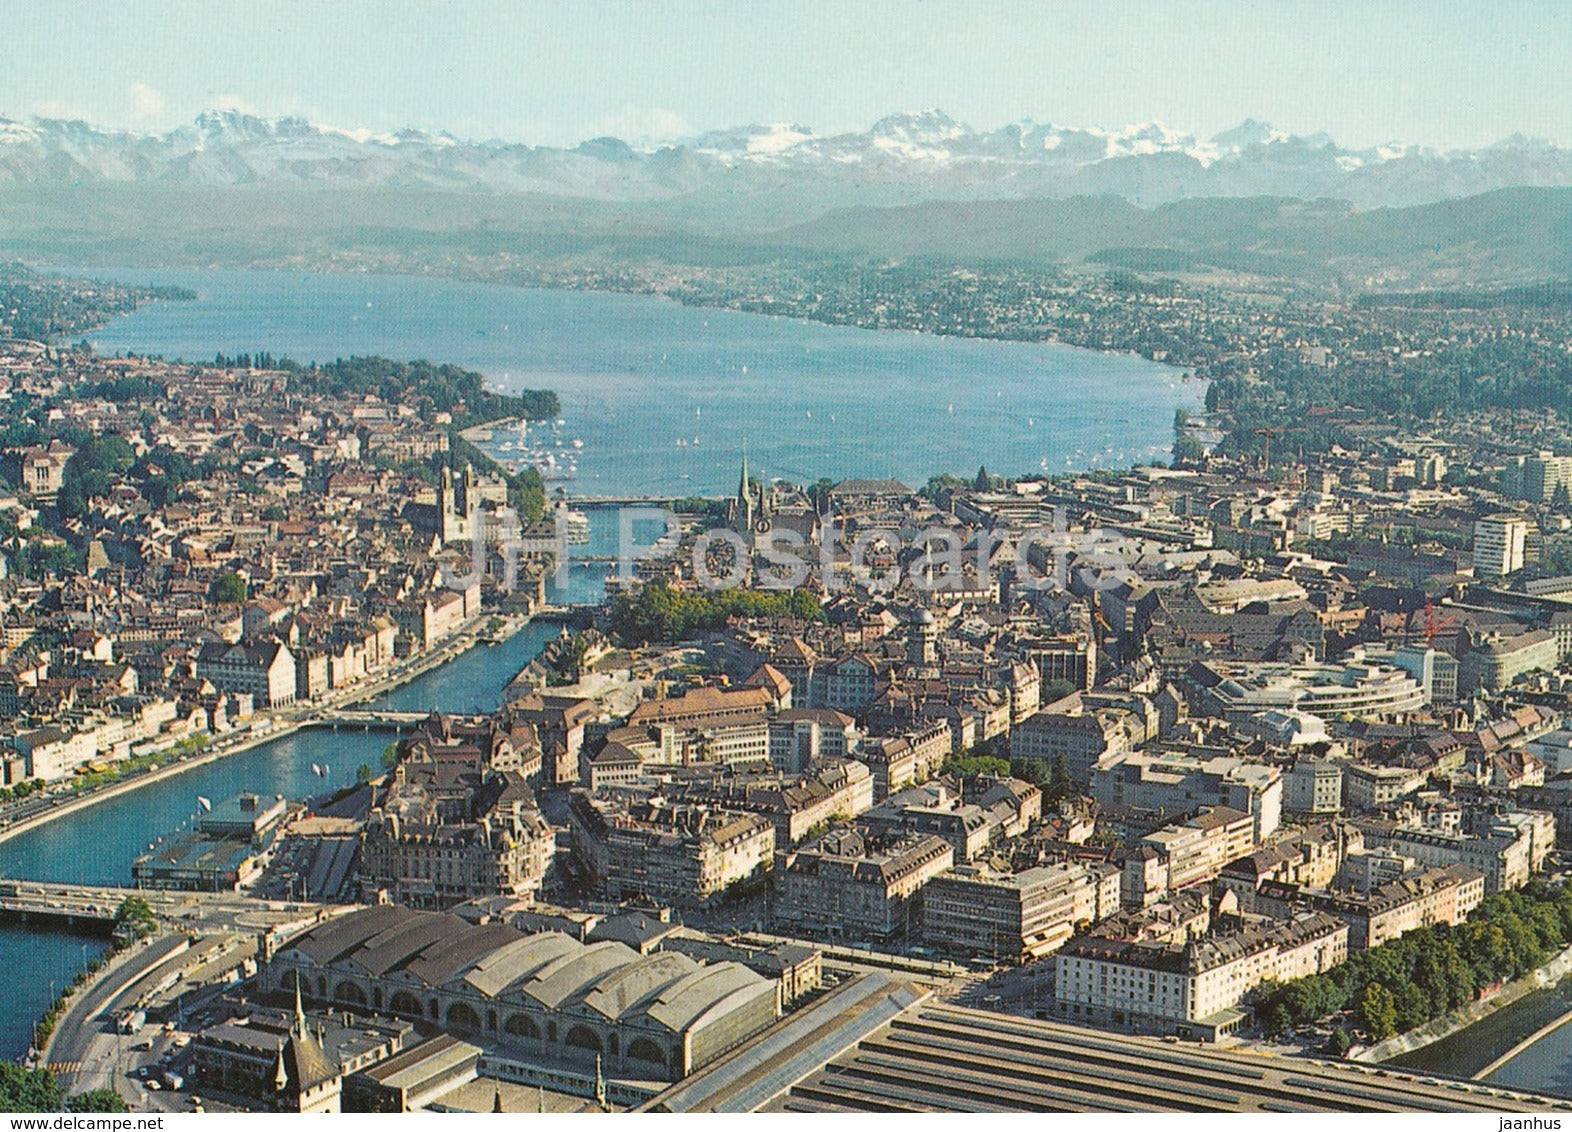 Flugaufnahme Zurich mit See und Alpen - 186 - Switzerland - unused - JH Postcards